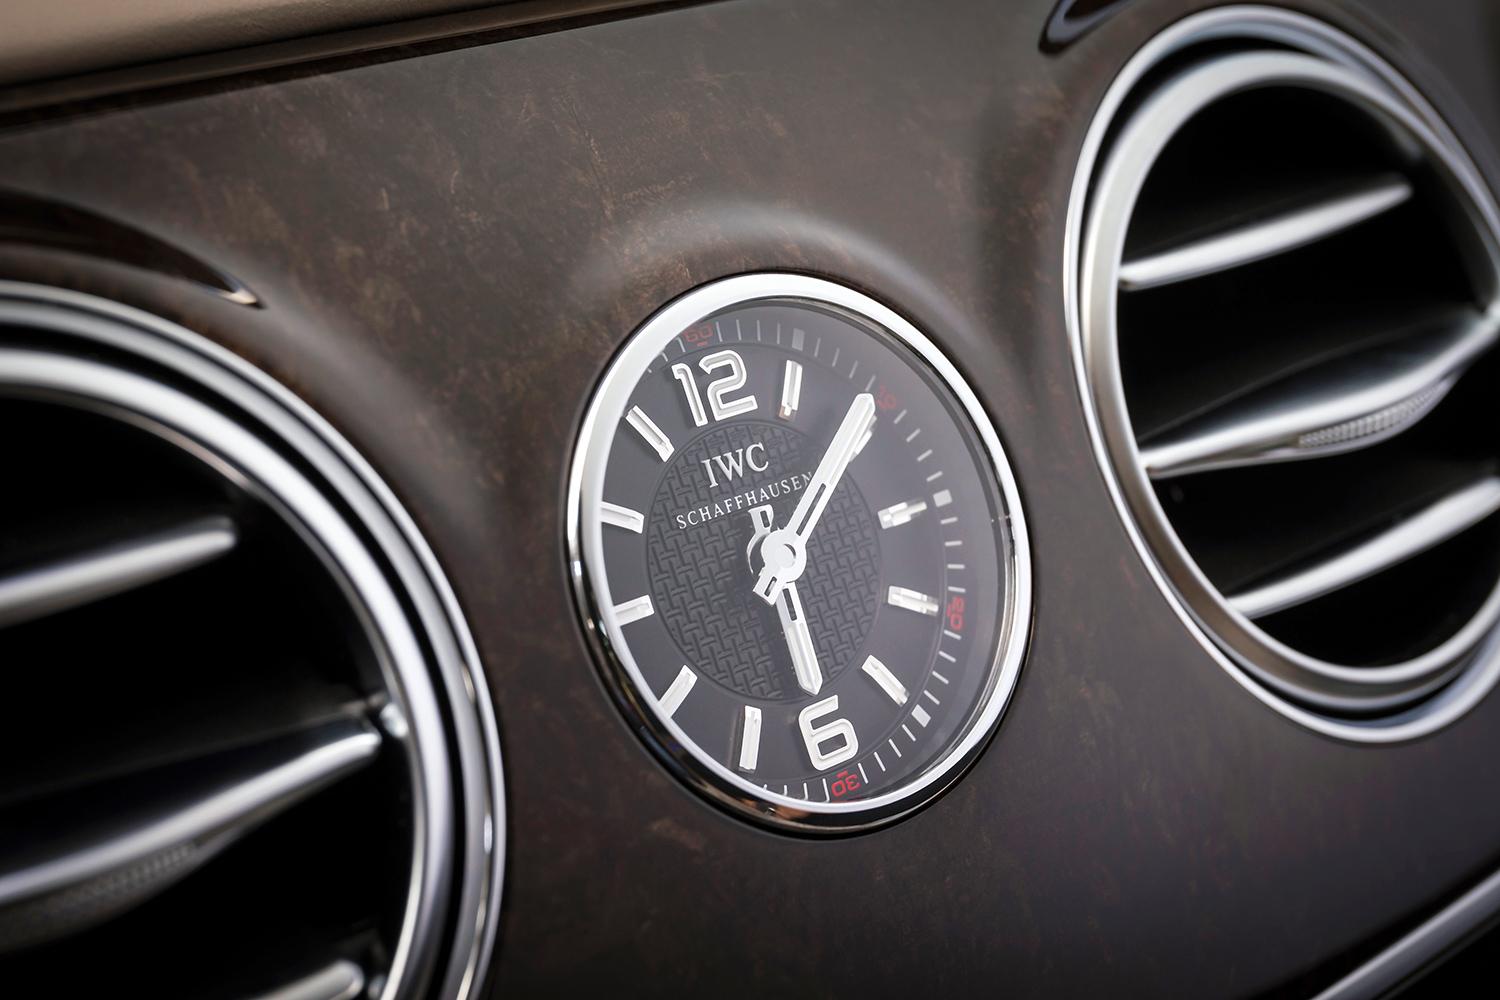 2015 Mercedes_Benz S65 AMG clock